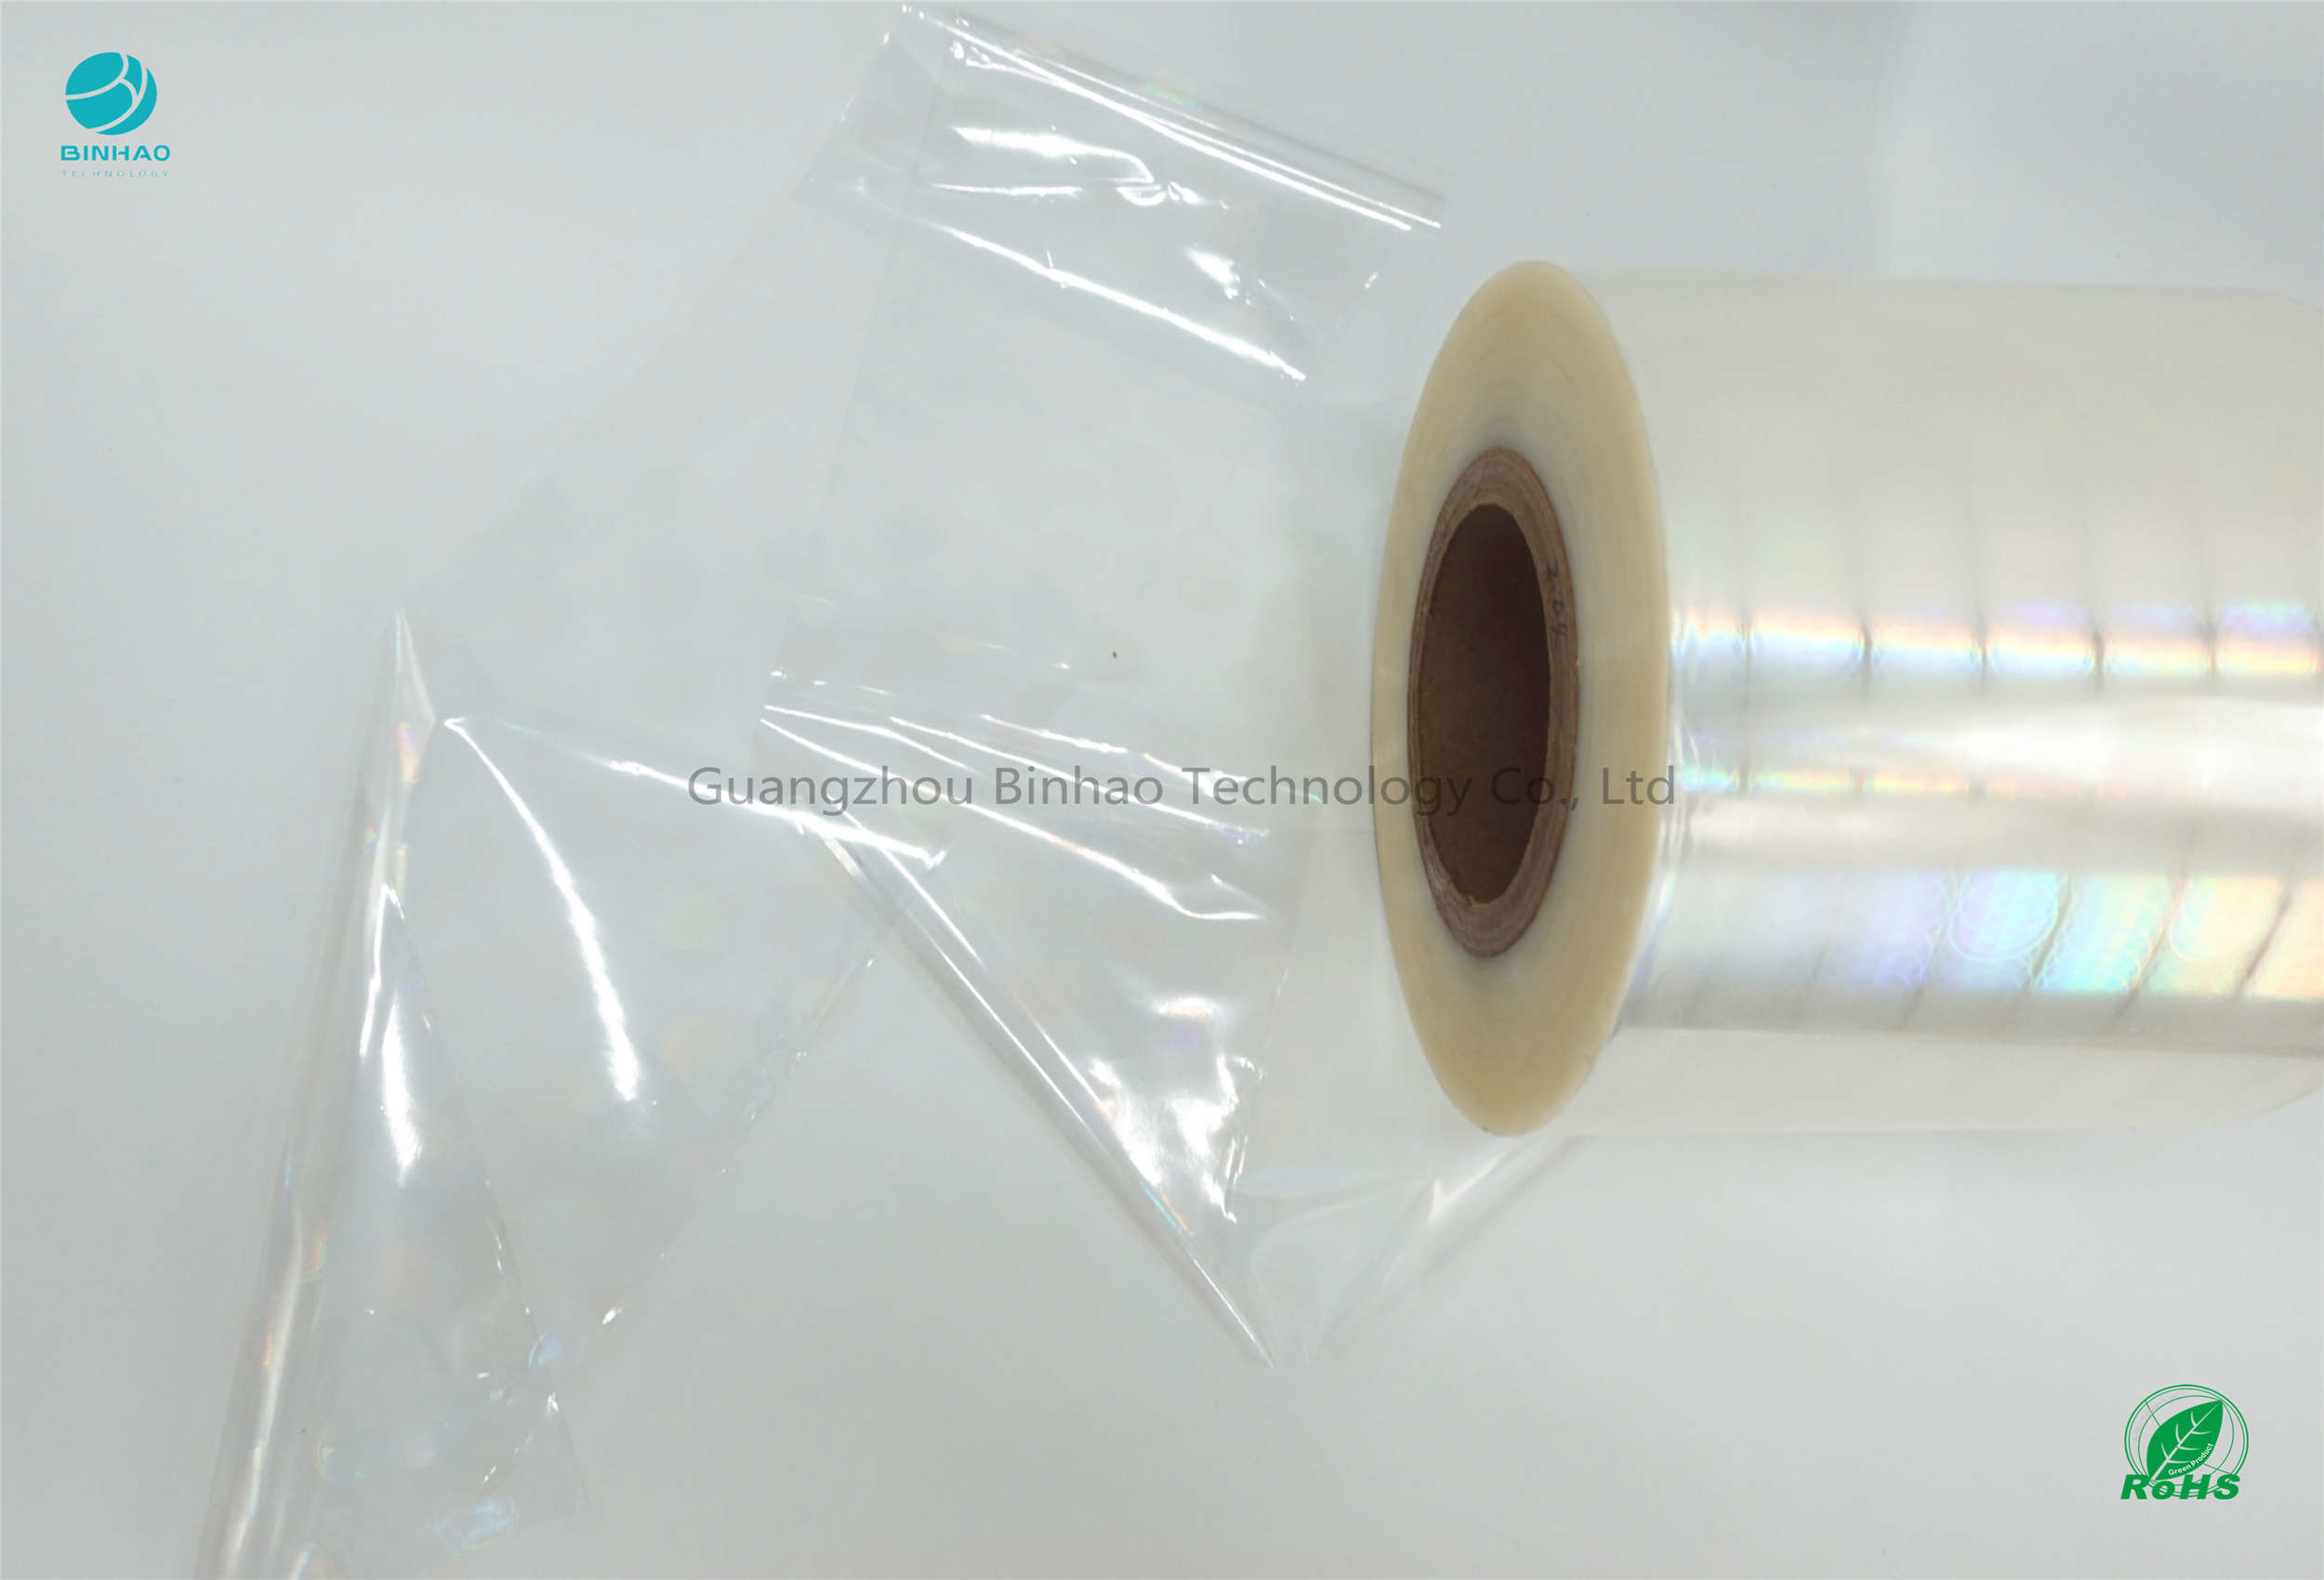 O lustro holográfico BOPP alto do rolo de filme do cigarro do psiquiatra etiqueta a impressão de laser da segurança